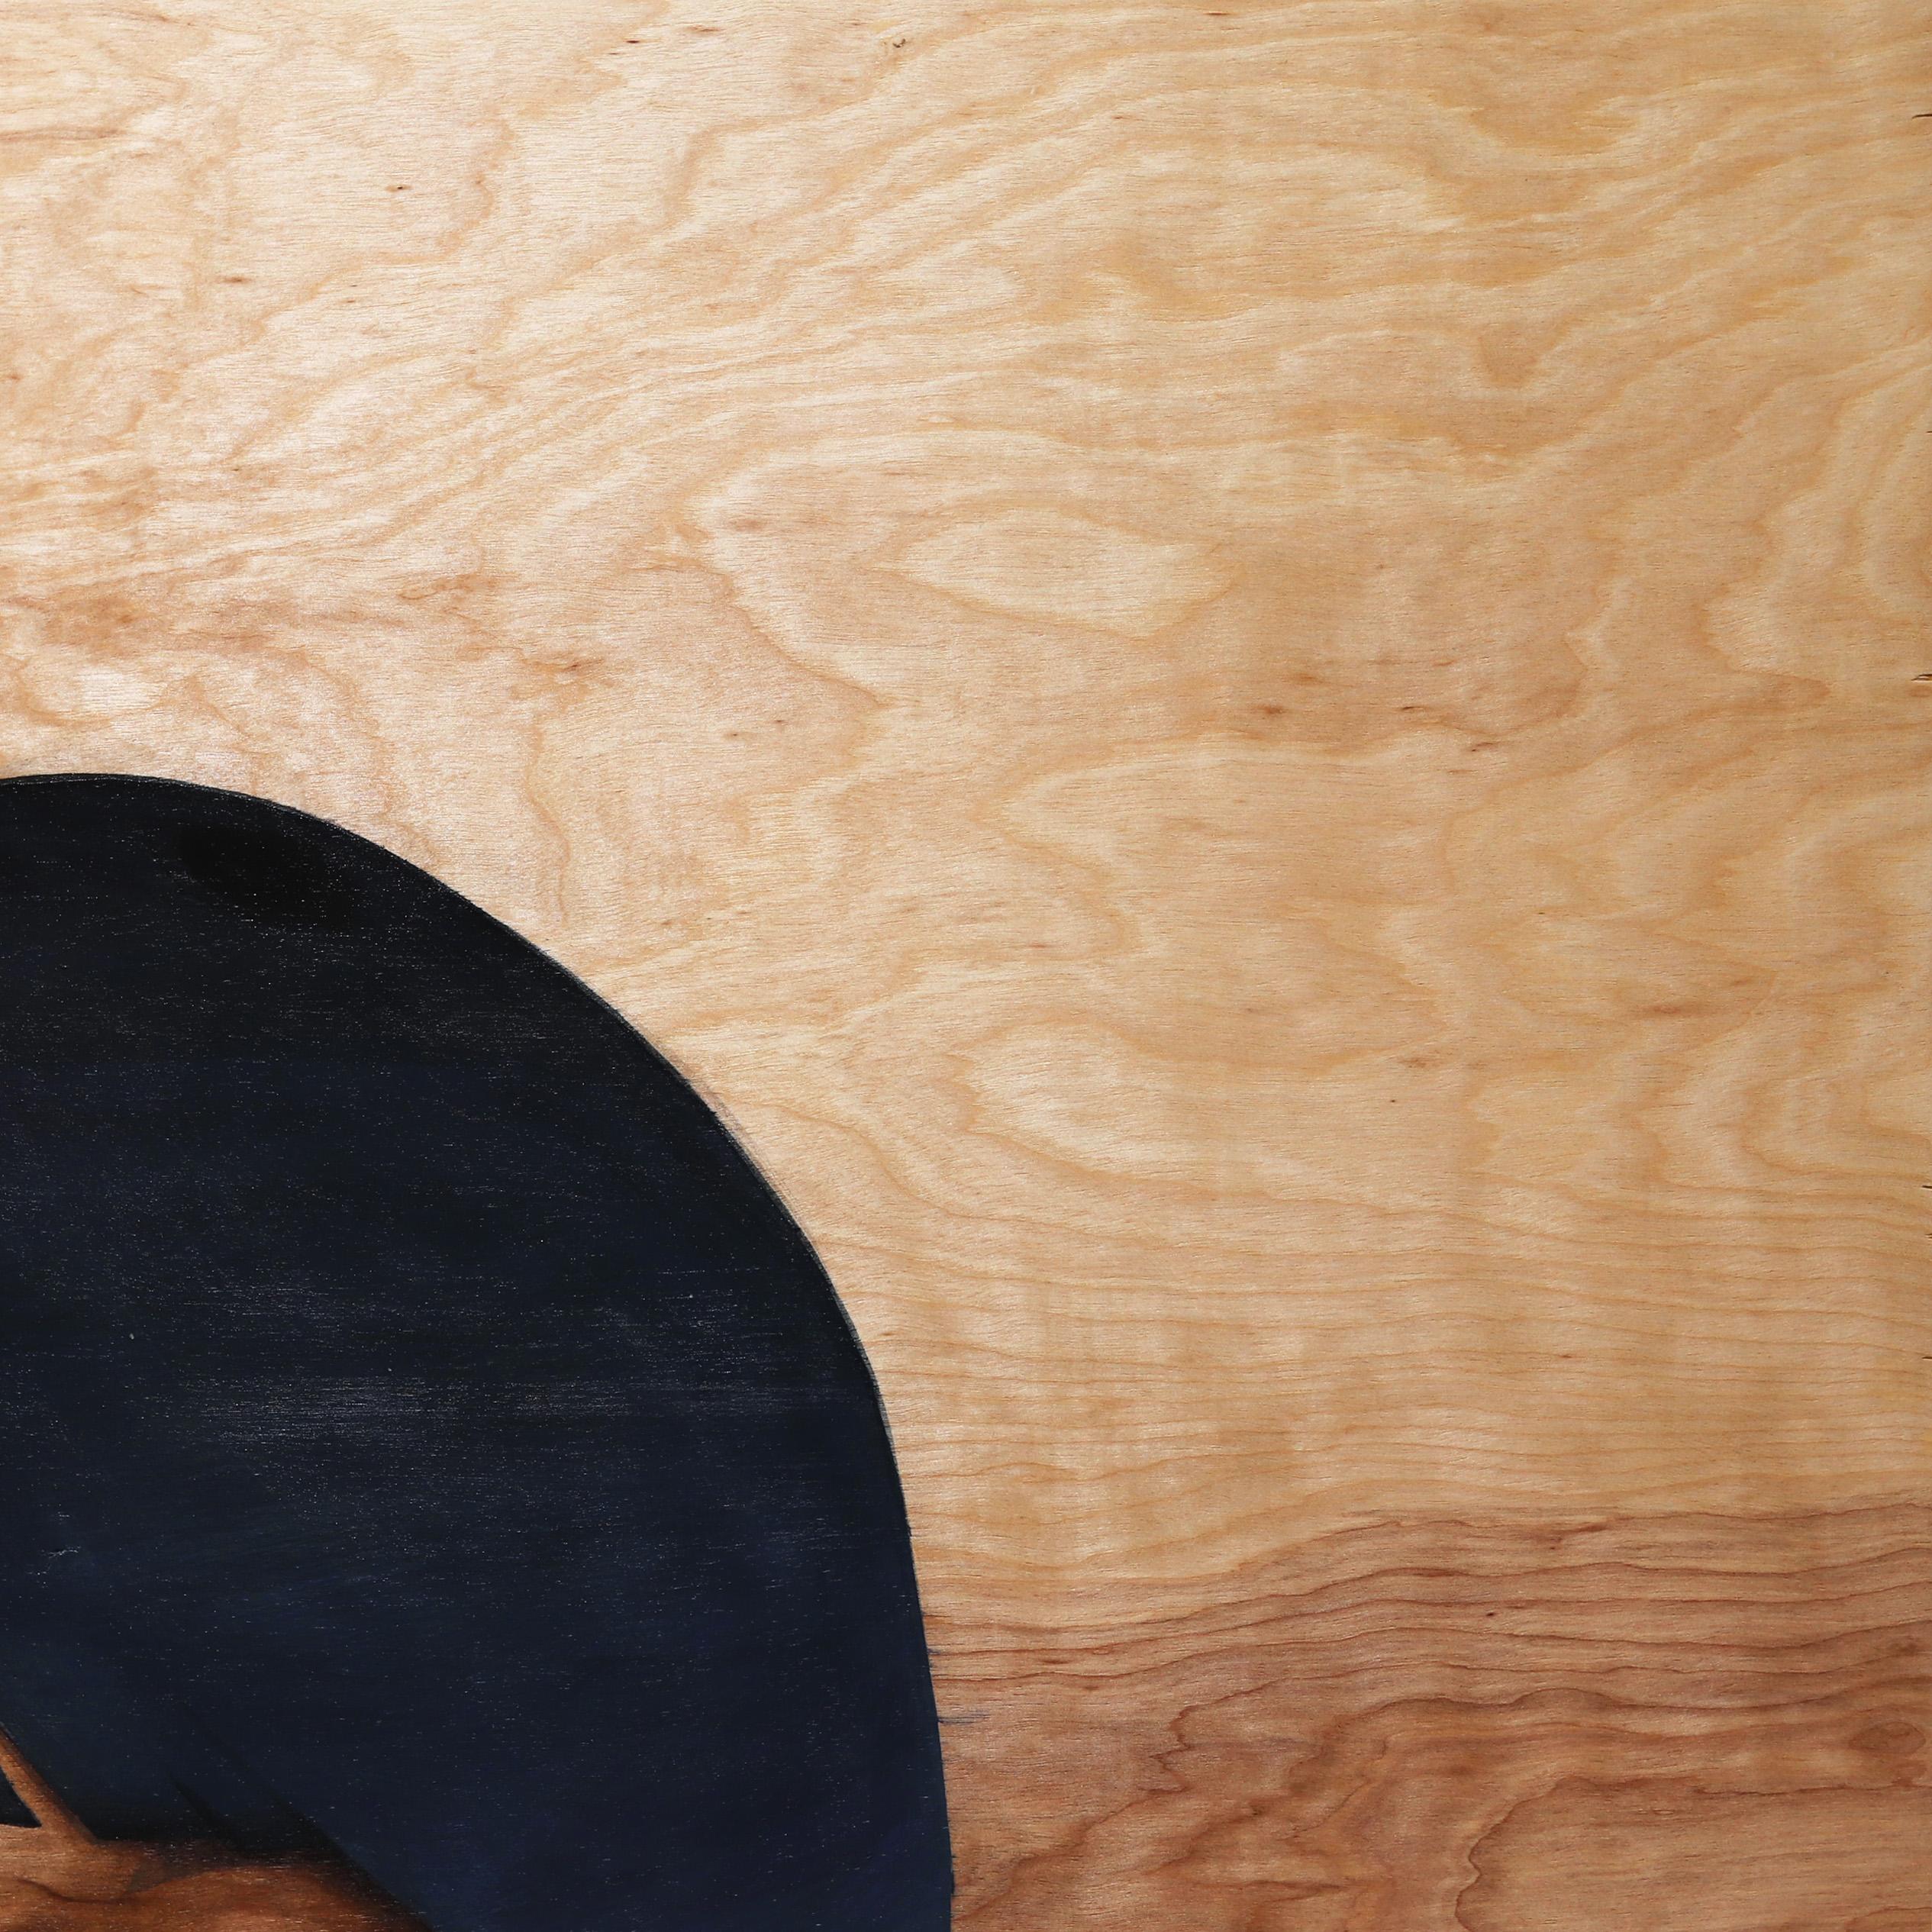 Eddy Lees figurative, surrealistische Porträtgemälde auf belichtetem Holz zeigen gefühlsbetonte Sirenen, die ein Gefühl von Geheimnis und Verführungskraft hervorrufen. Seine originellen Kunstwerke kombinieren geometrische Elemente mit unschuldigen